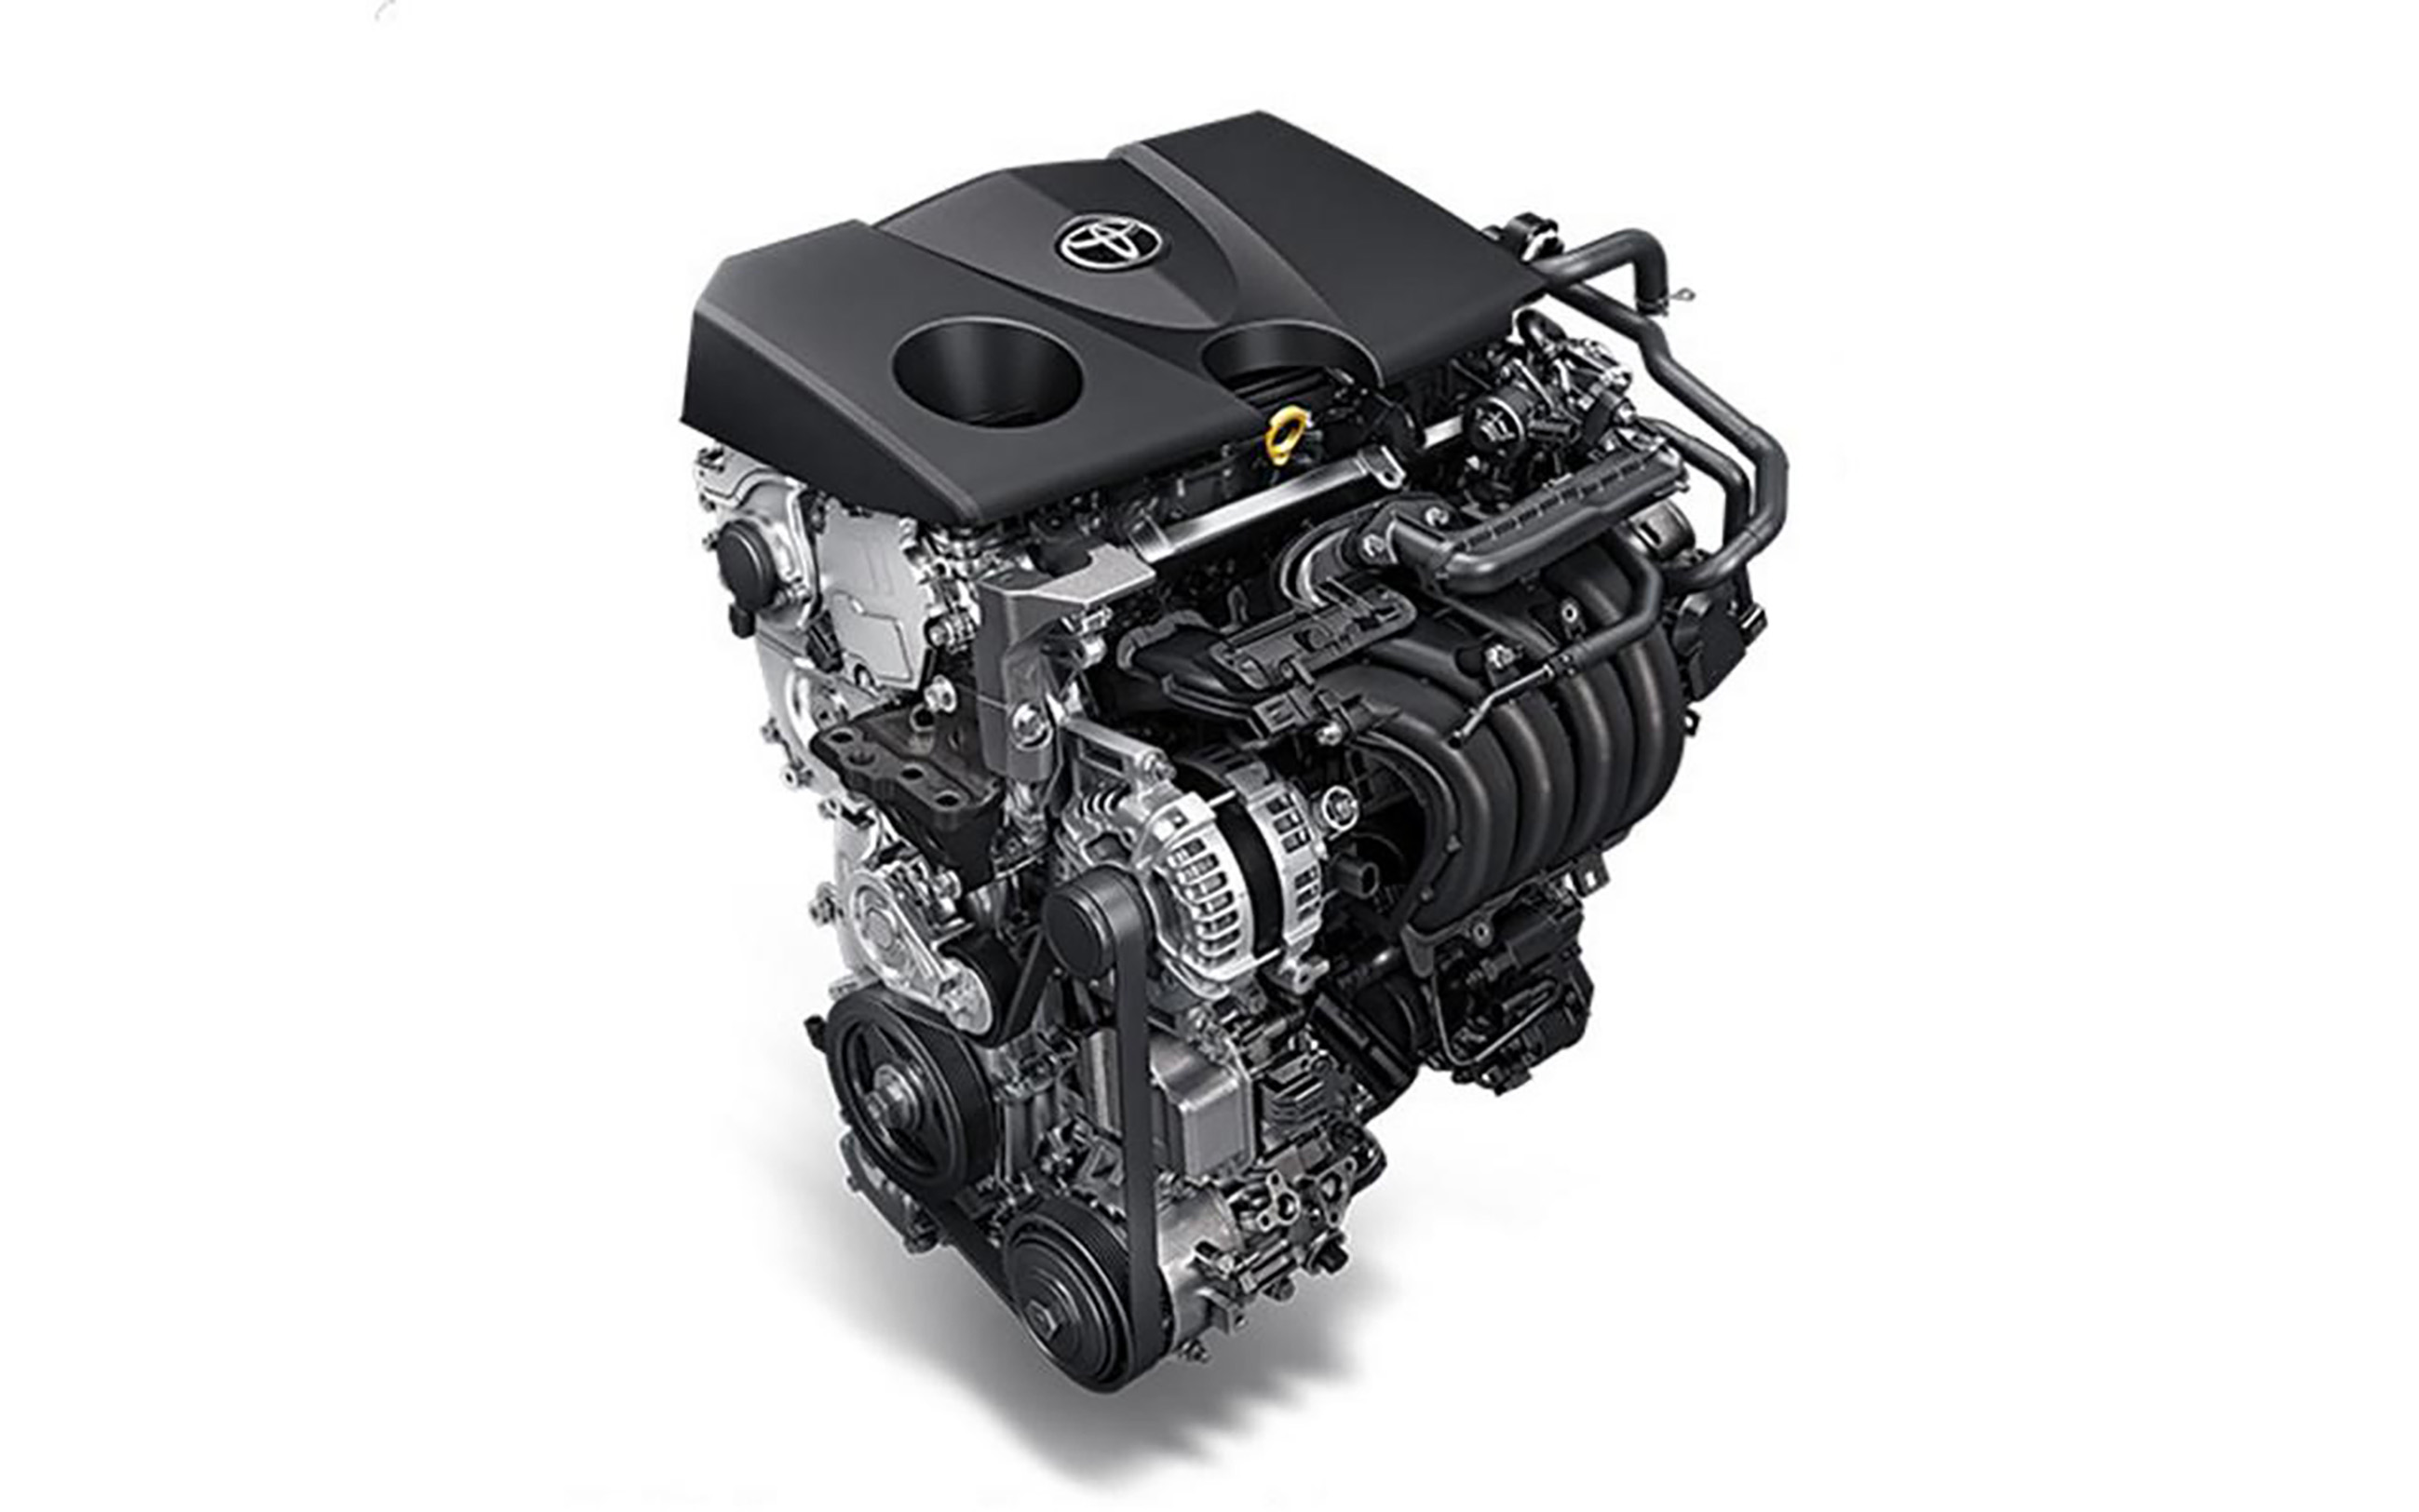 全新一代的亚洲狮发动机采用的是一台20升自然吸气四缸发动机